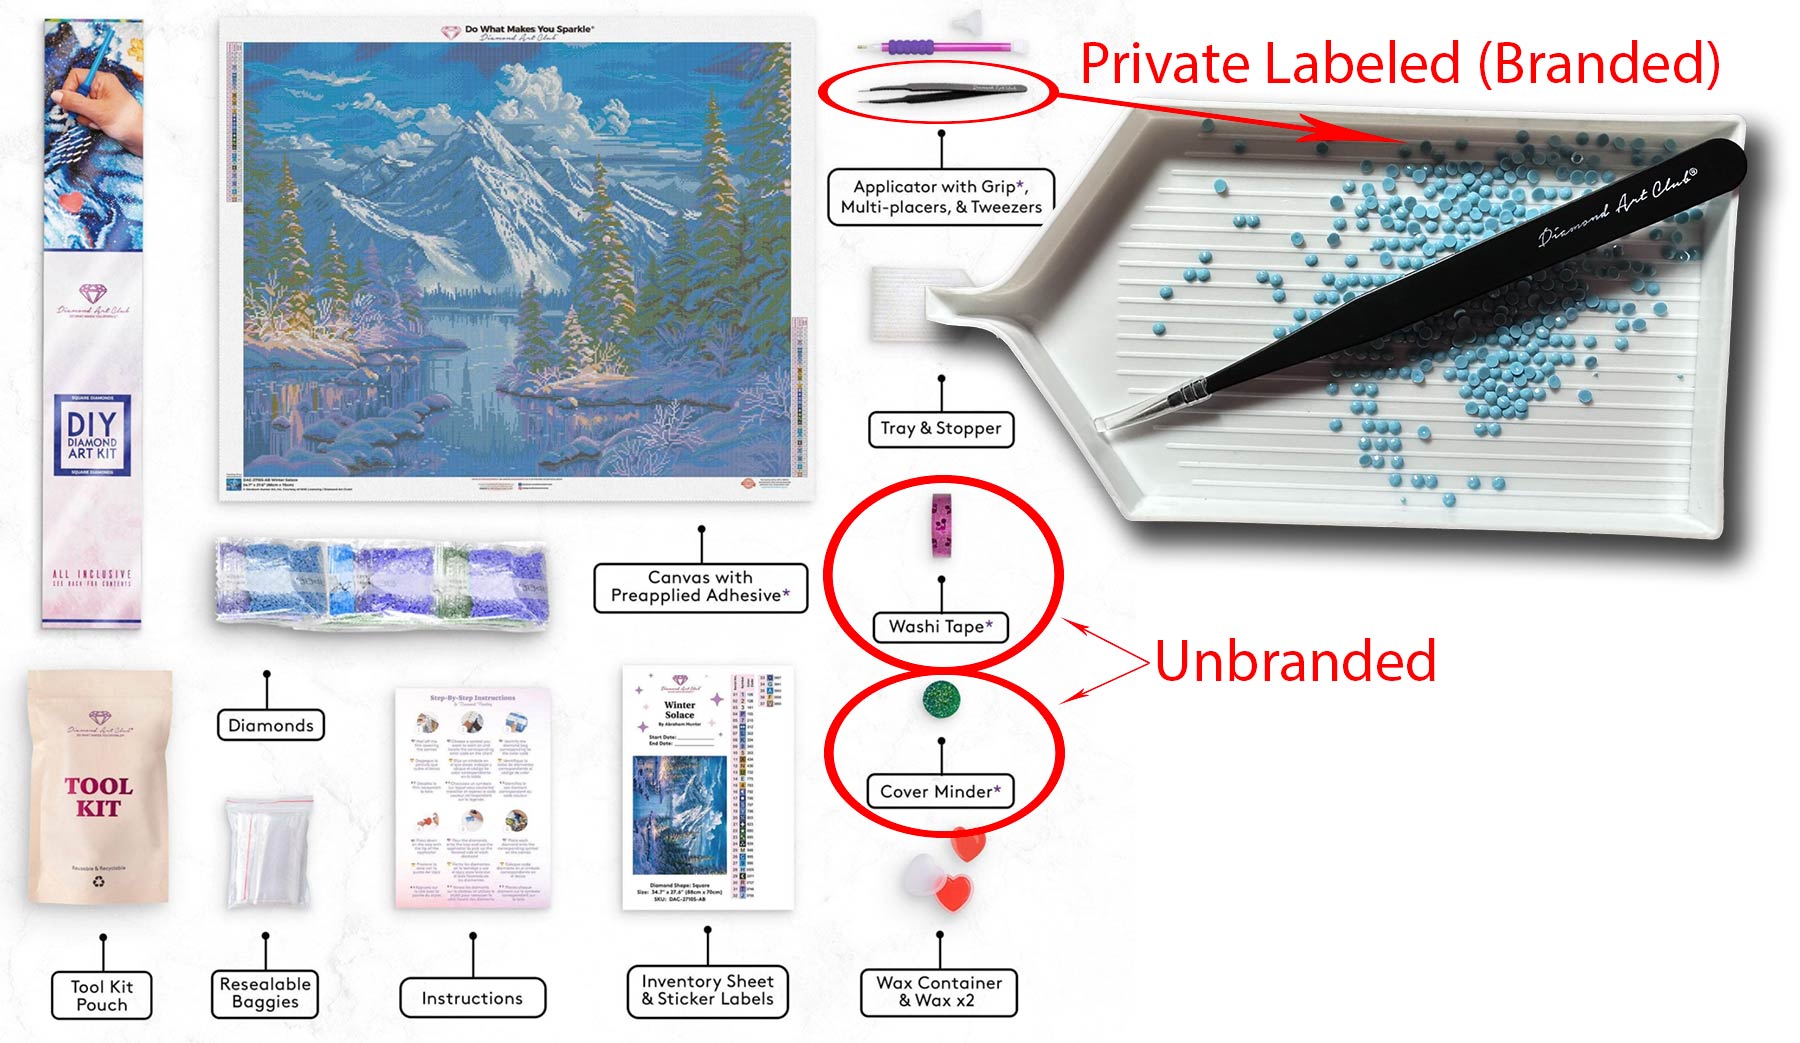 Private label (branded) tweezers